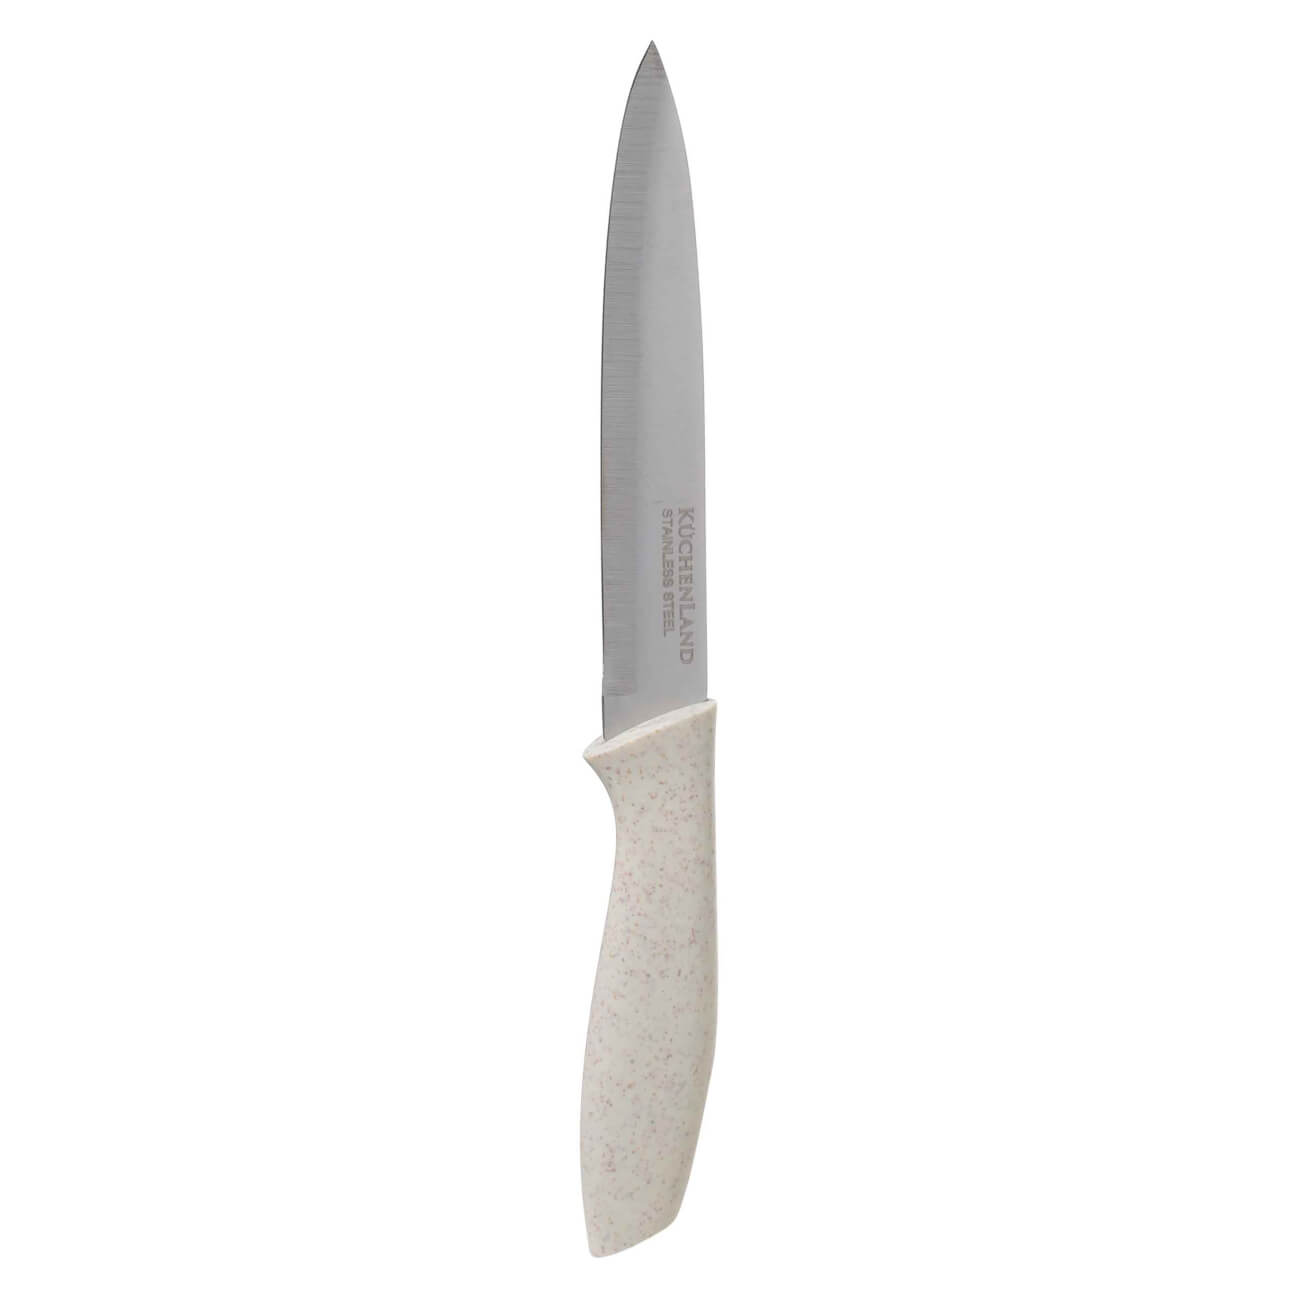 Нож для нарезки, 13 см, сталь/пластик, молочный, Speck-light горшок для ов пластик 5 л 22 2х20 2х22 2 см молочный радиан элеганс 10051231